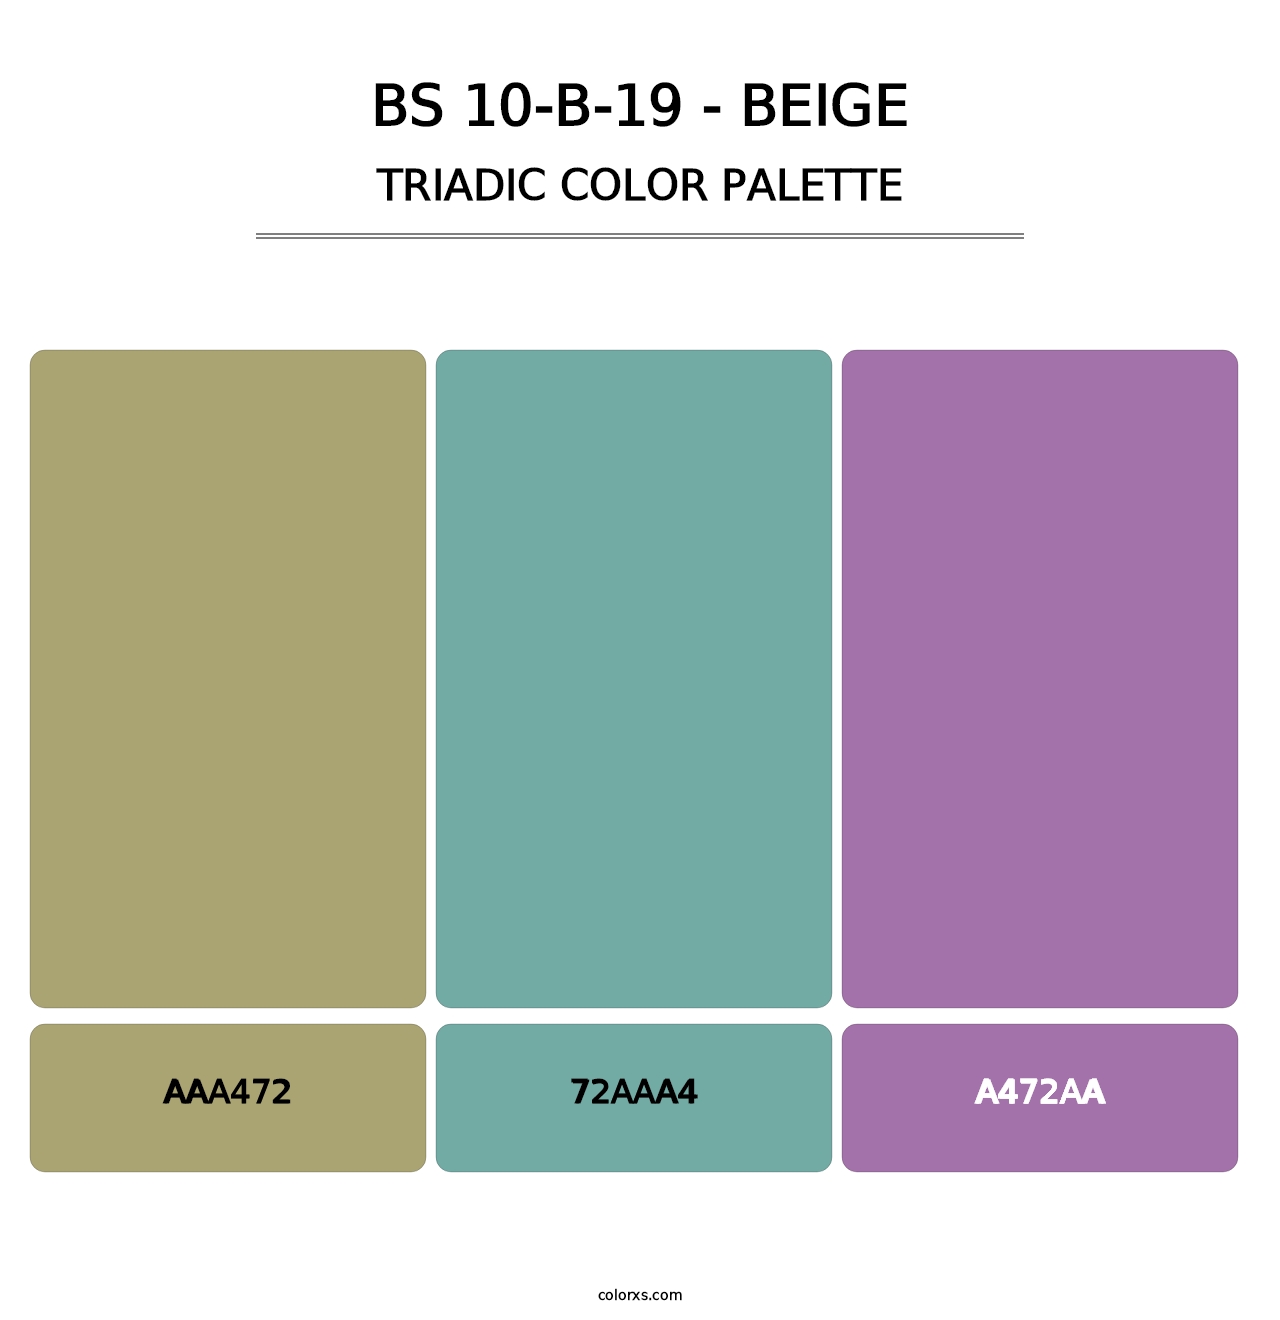 BS 10-B-19 - Beige - Triadic Color Palette